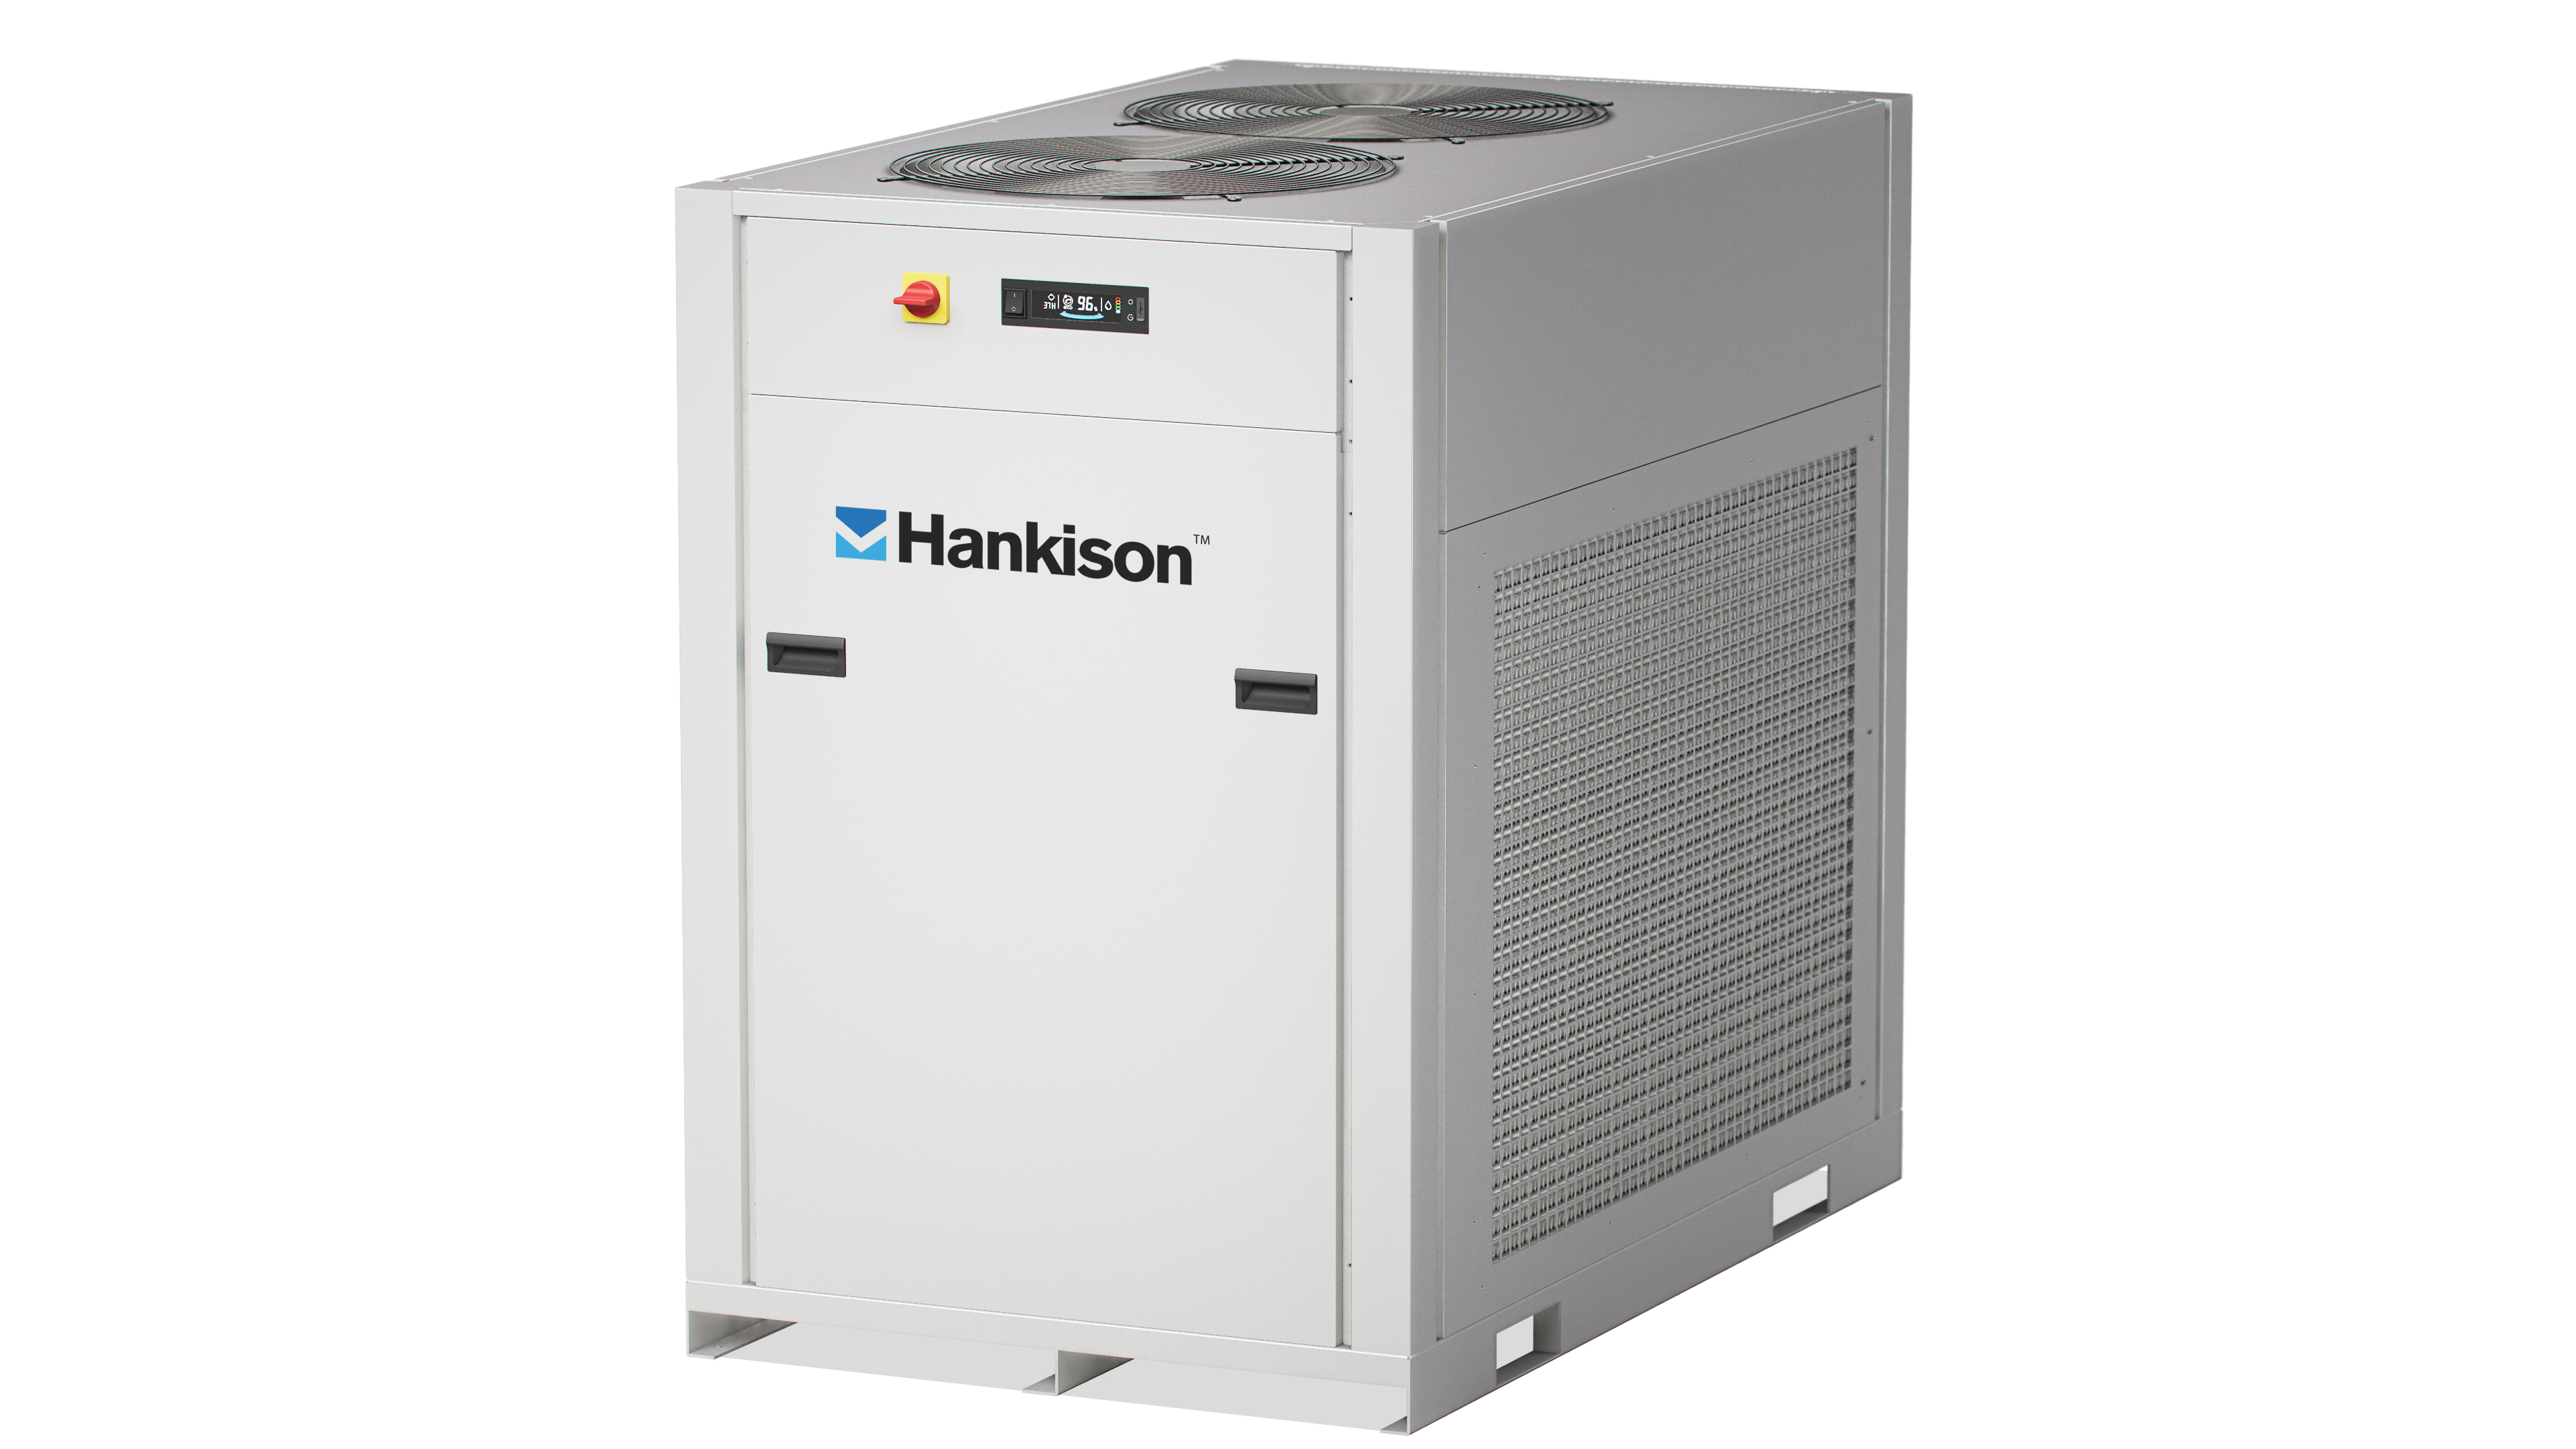 Hankison FLEX refrigerated compressed air dryer 20